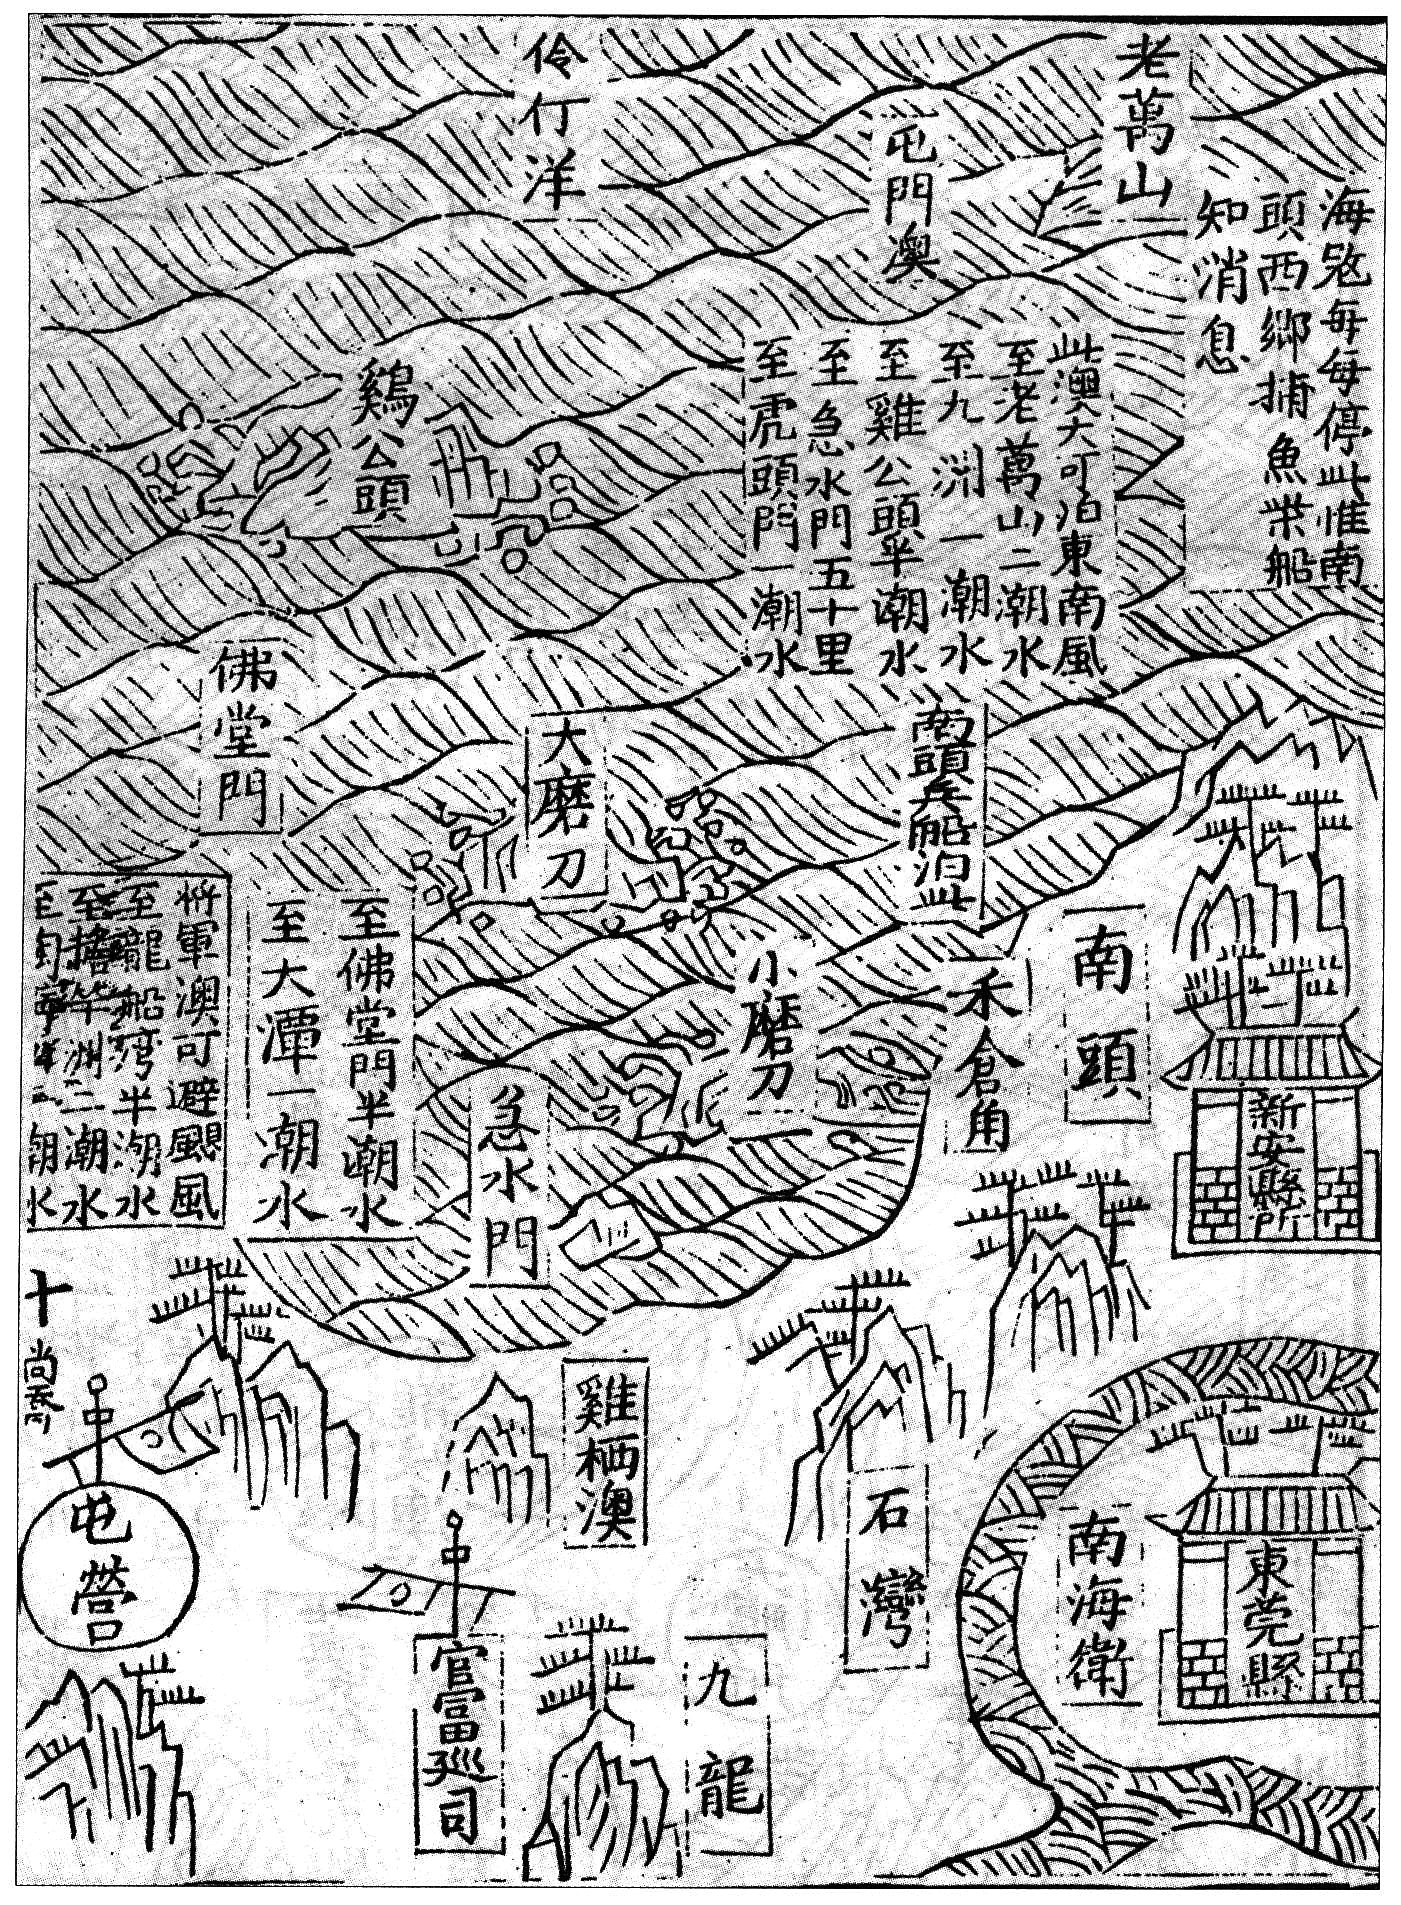 明萬曆九年（1581）應檟編輯、劉堯誨重修的《蒼梧總督軍門志》中的《全廣海圖》標注有「九龍」的地名，是目前發現最早標示「九龍」一名的古地圖。